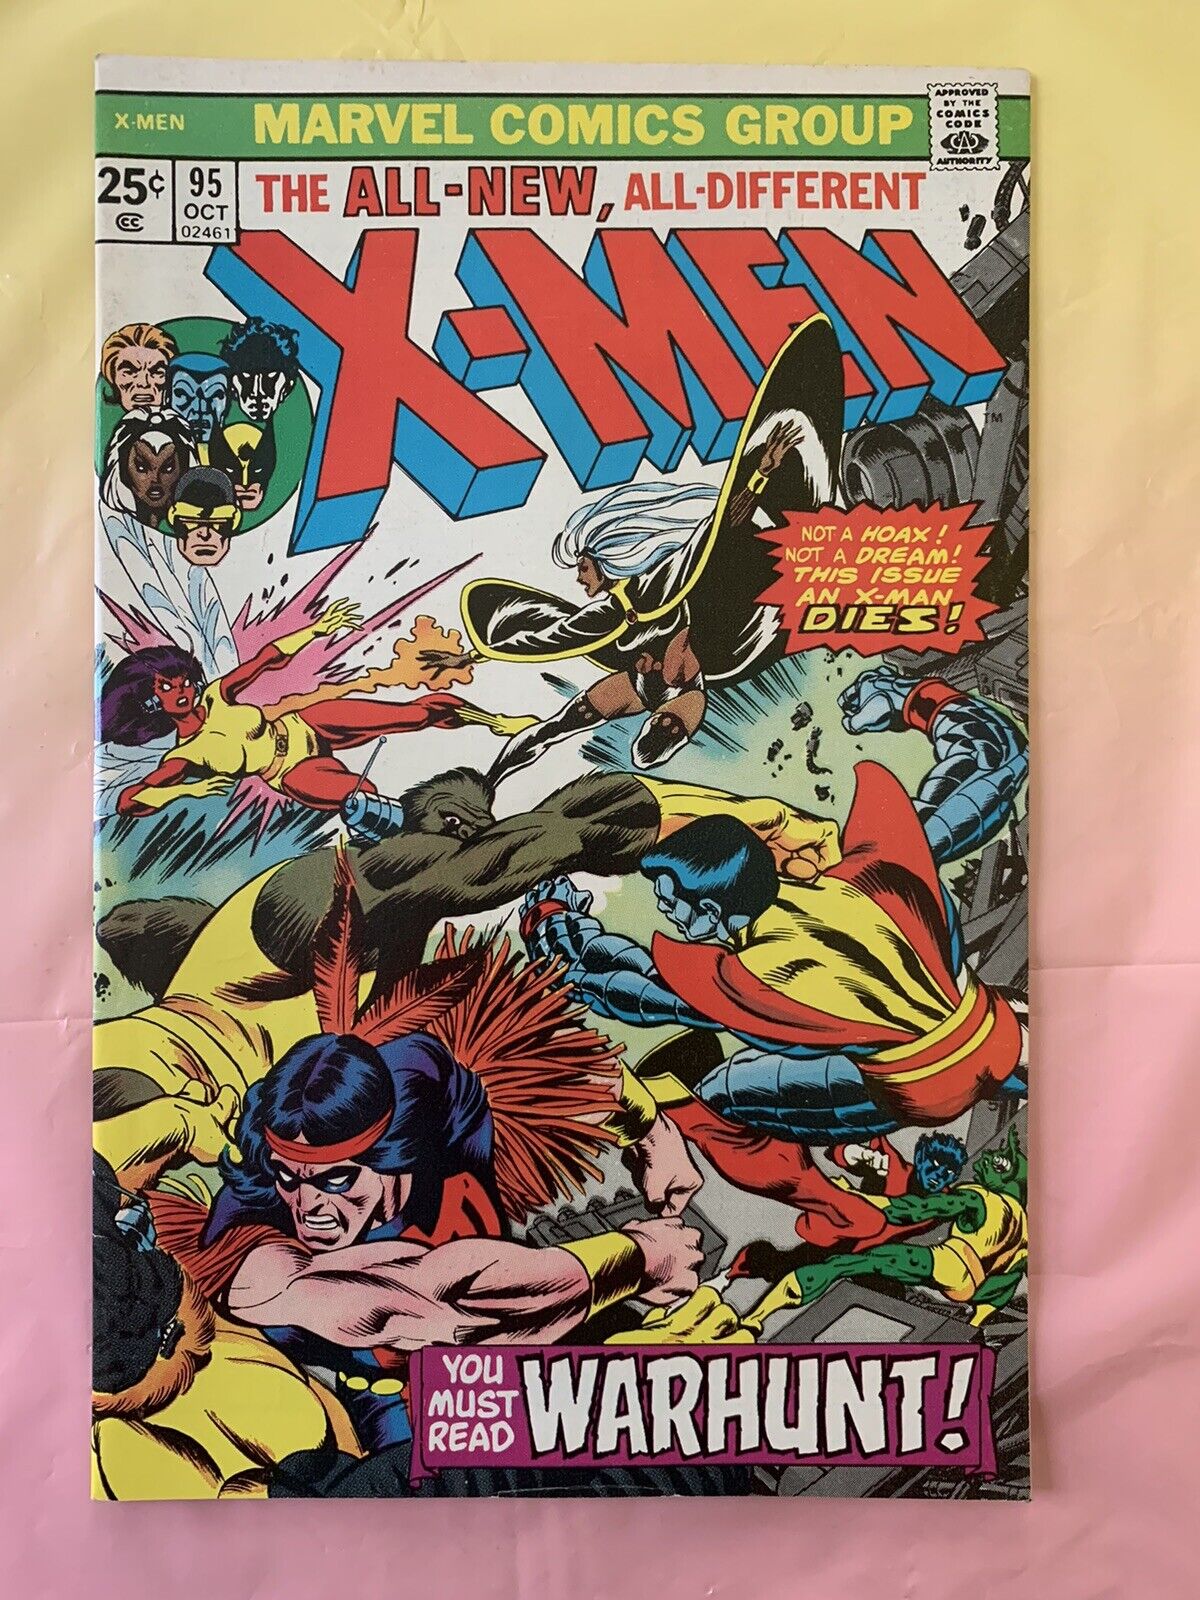 X-Men Vol. 1 #95 High Grade Key Issue April 1975 New X-Men 9.0+